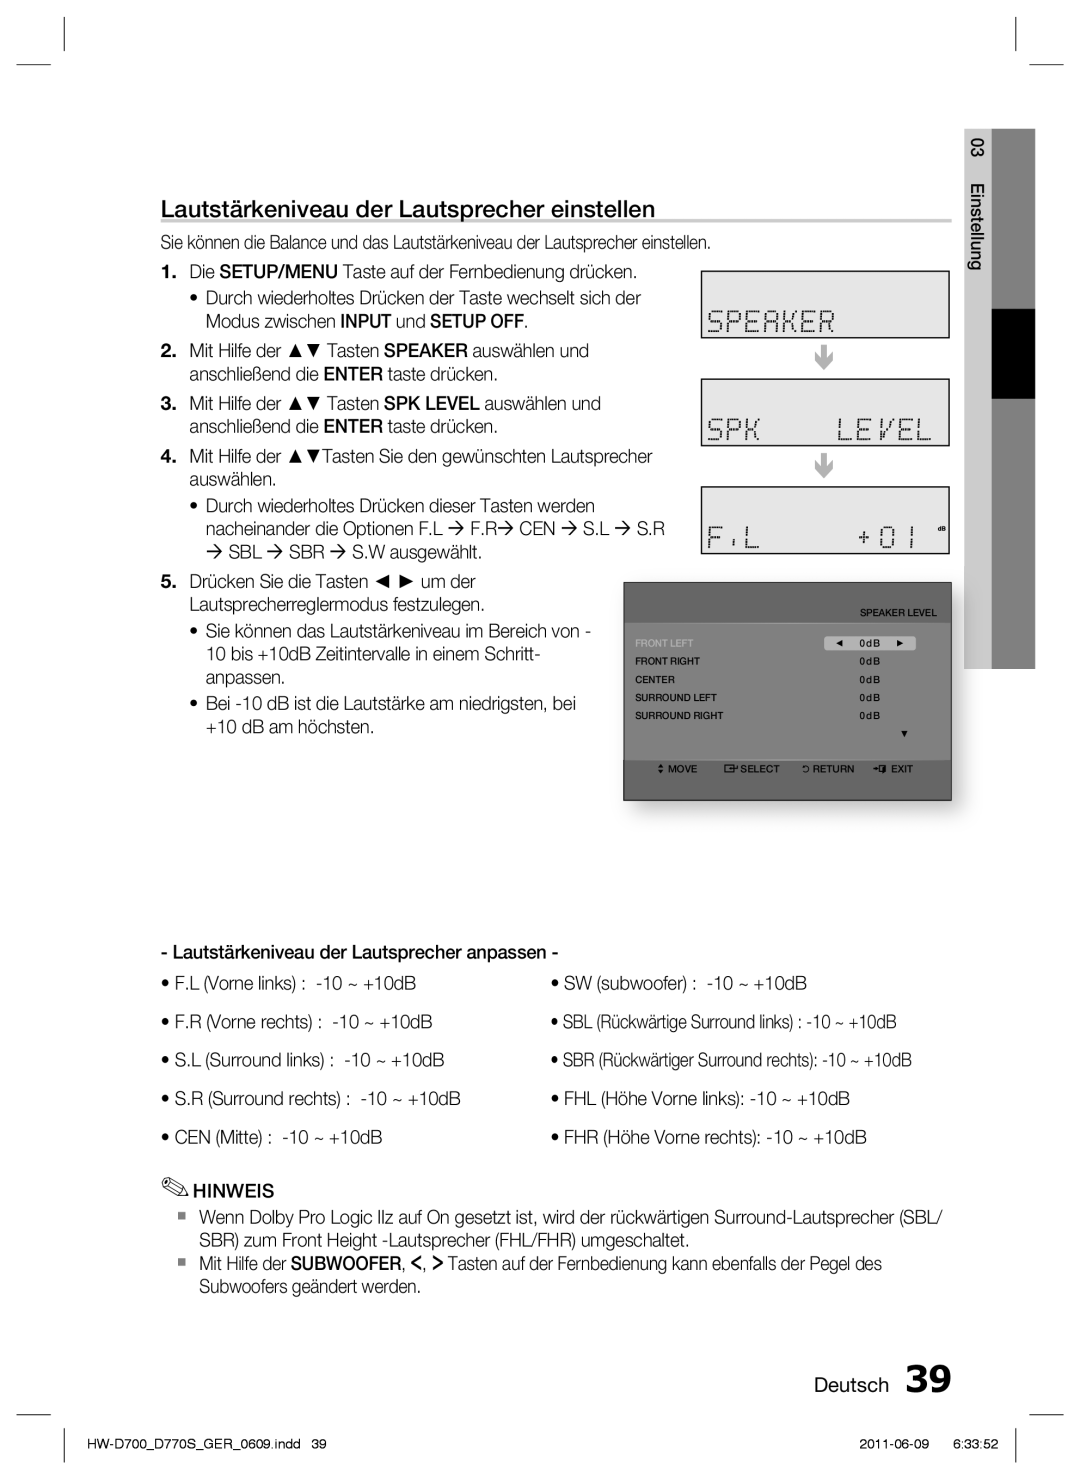 Samsung HW-D700/EN manual Lautstärkeniveau der Lautsprecher einstellen, Deutsch, SBL Rückwärtige Surround links -10 ~ +10dB 